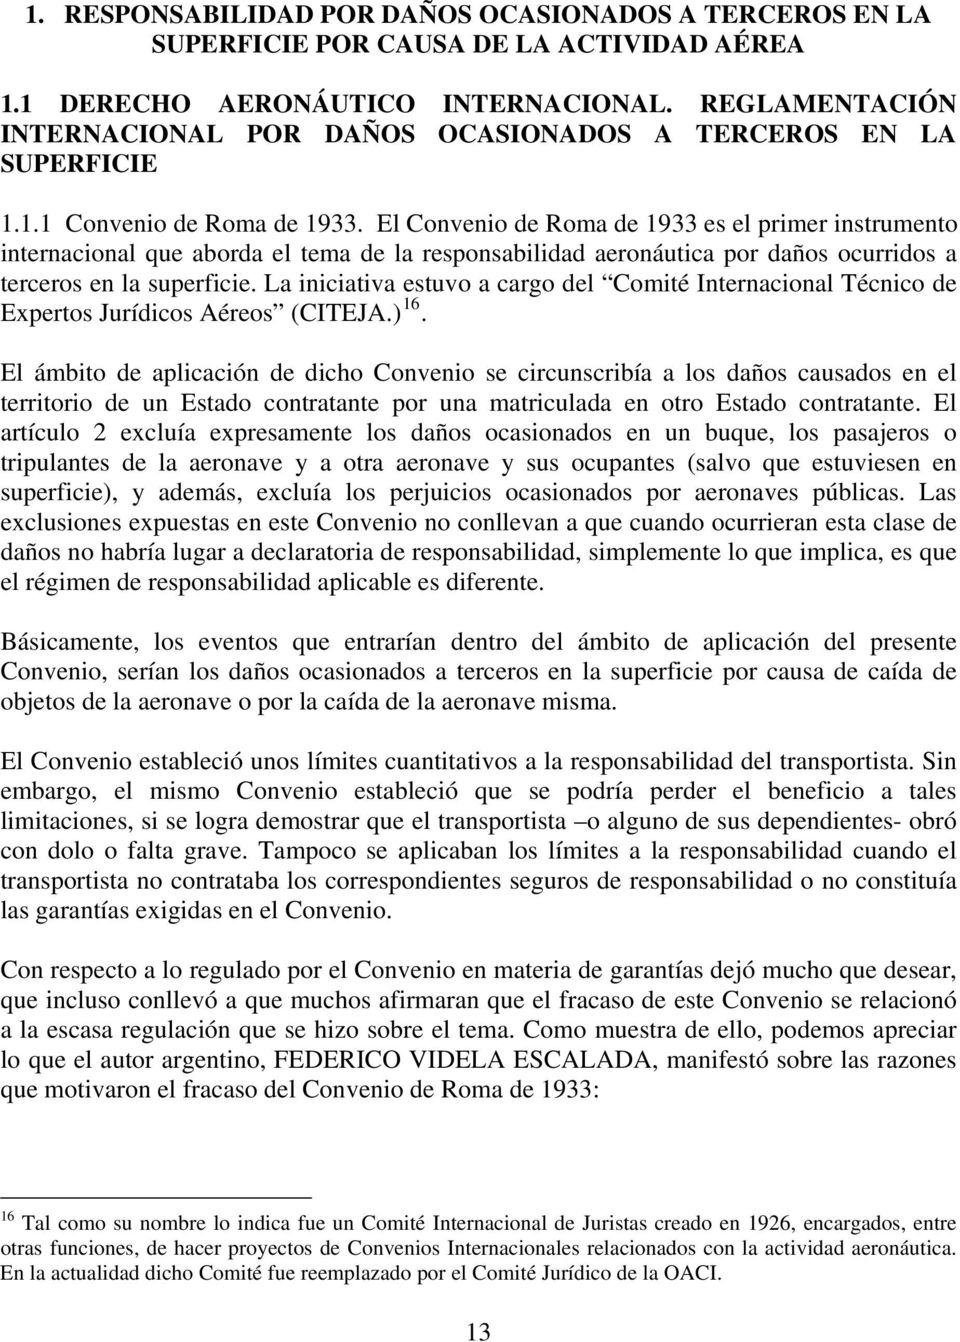 El Convenio de Roma de 1933 es el primer instrumento internacional que aborda el tema de la responsabilidad aeronáutica por daños ocurridos a terceros en la superficie.